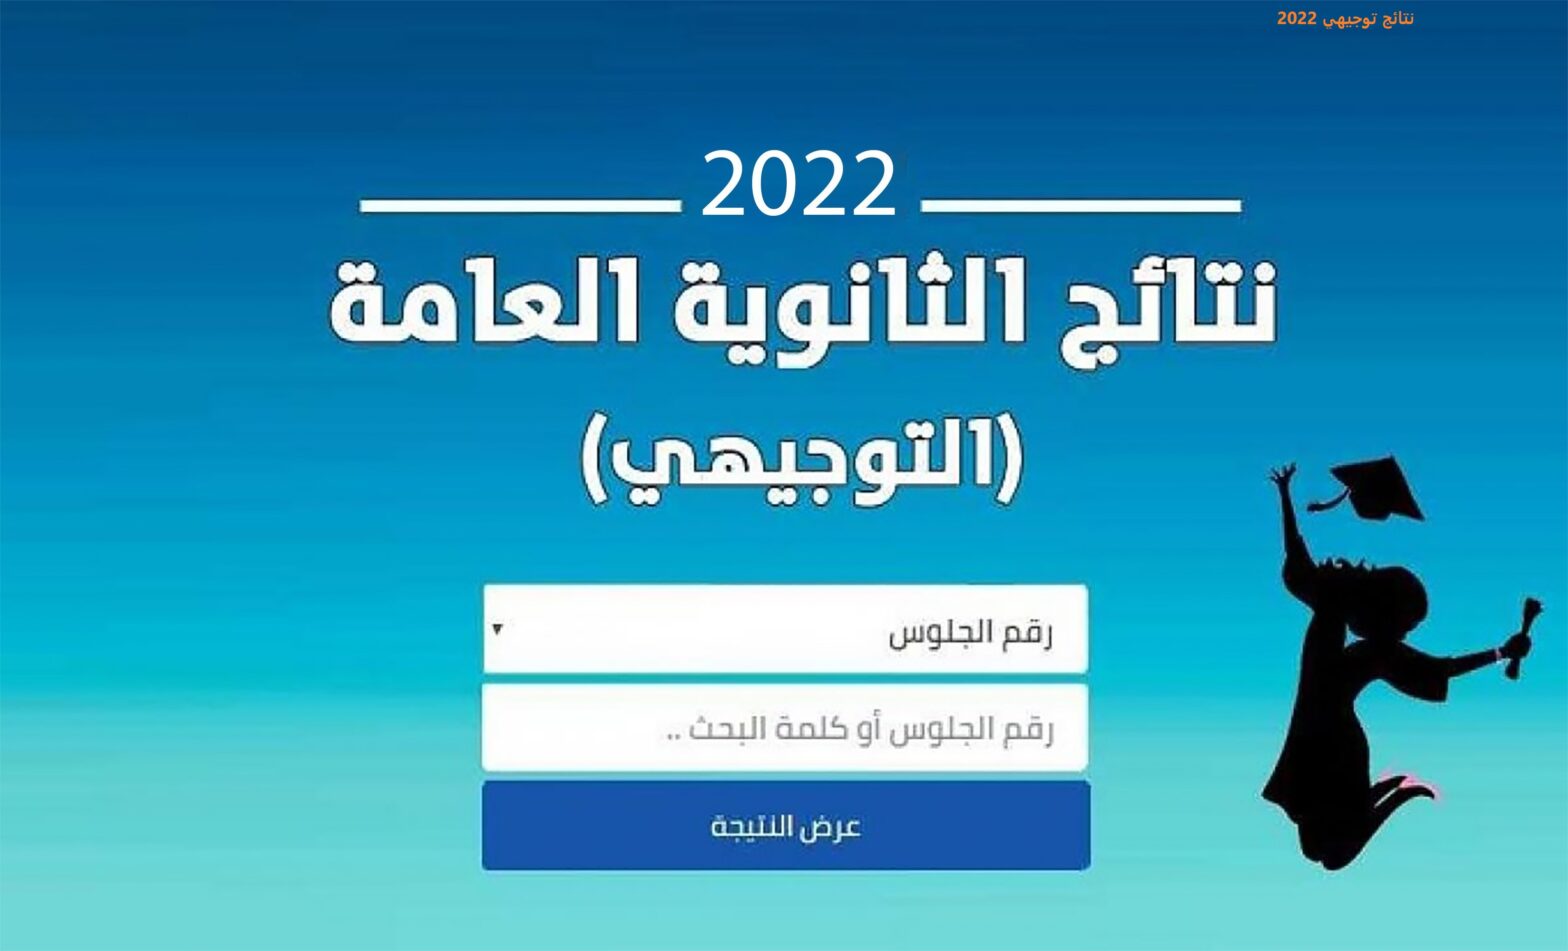 توجيهي 2022 1568x951 1 1 - موعد نتائج التوجيهي 2022 الأردن عبر موقع وزارة التربية والتعليمي الاردنية moe.gov.jo